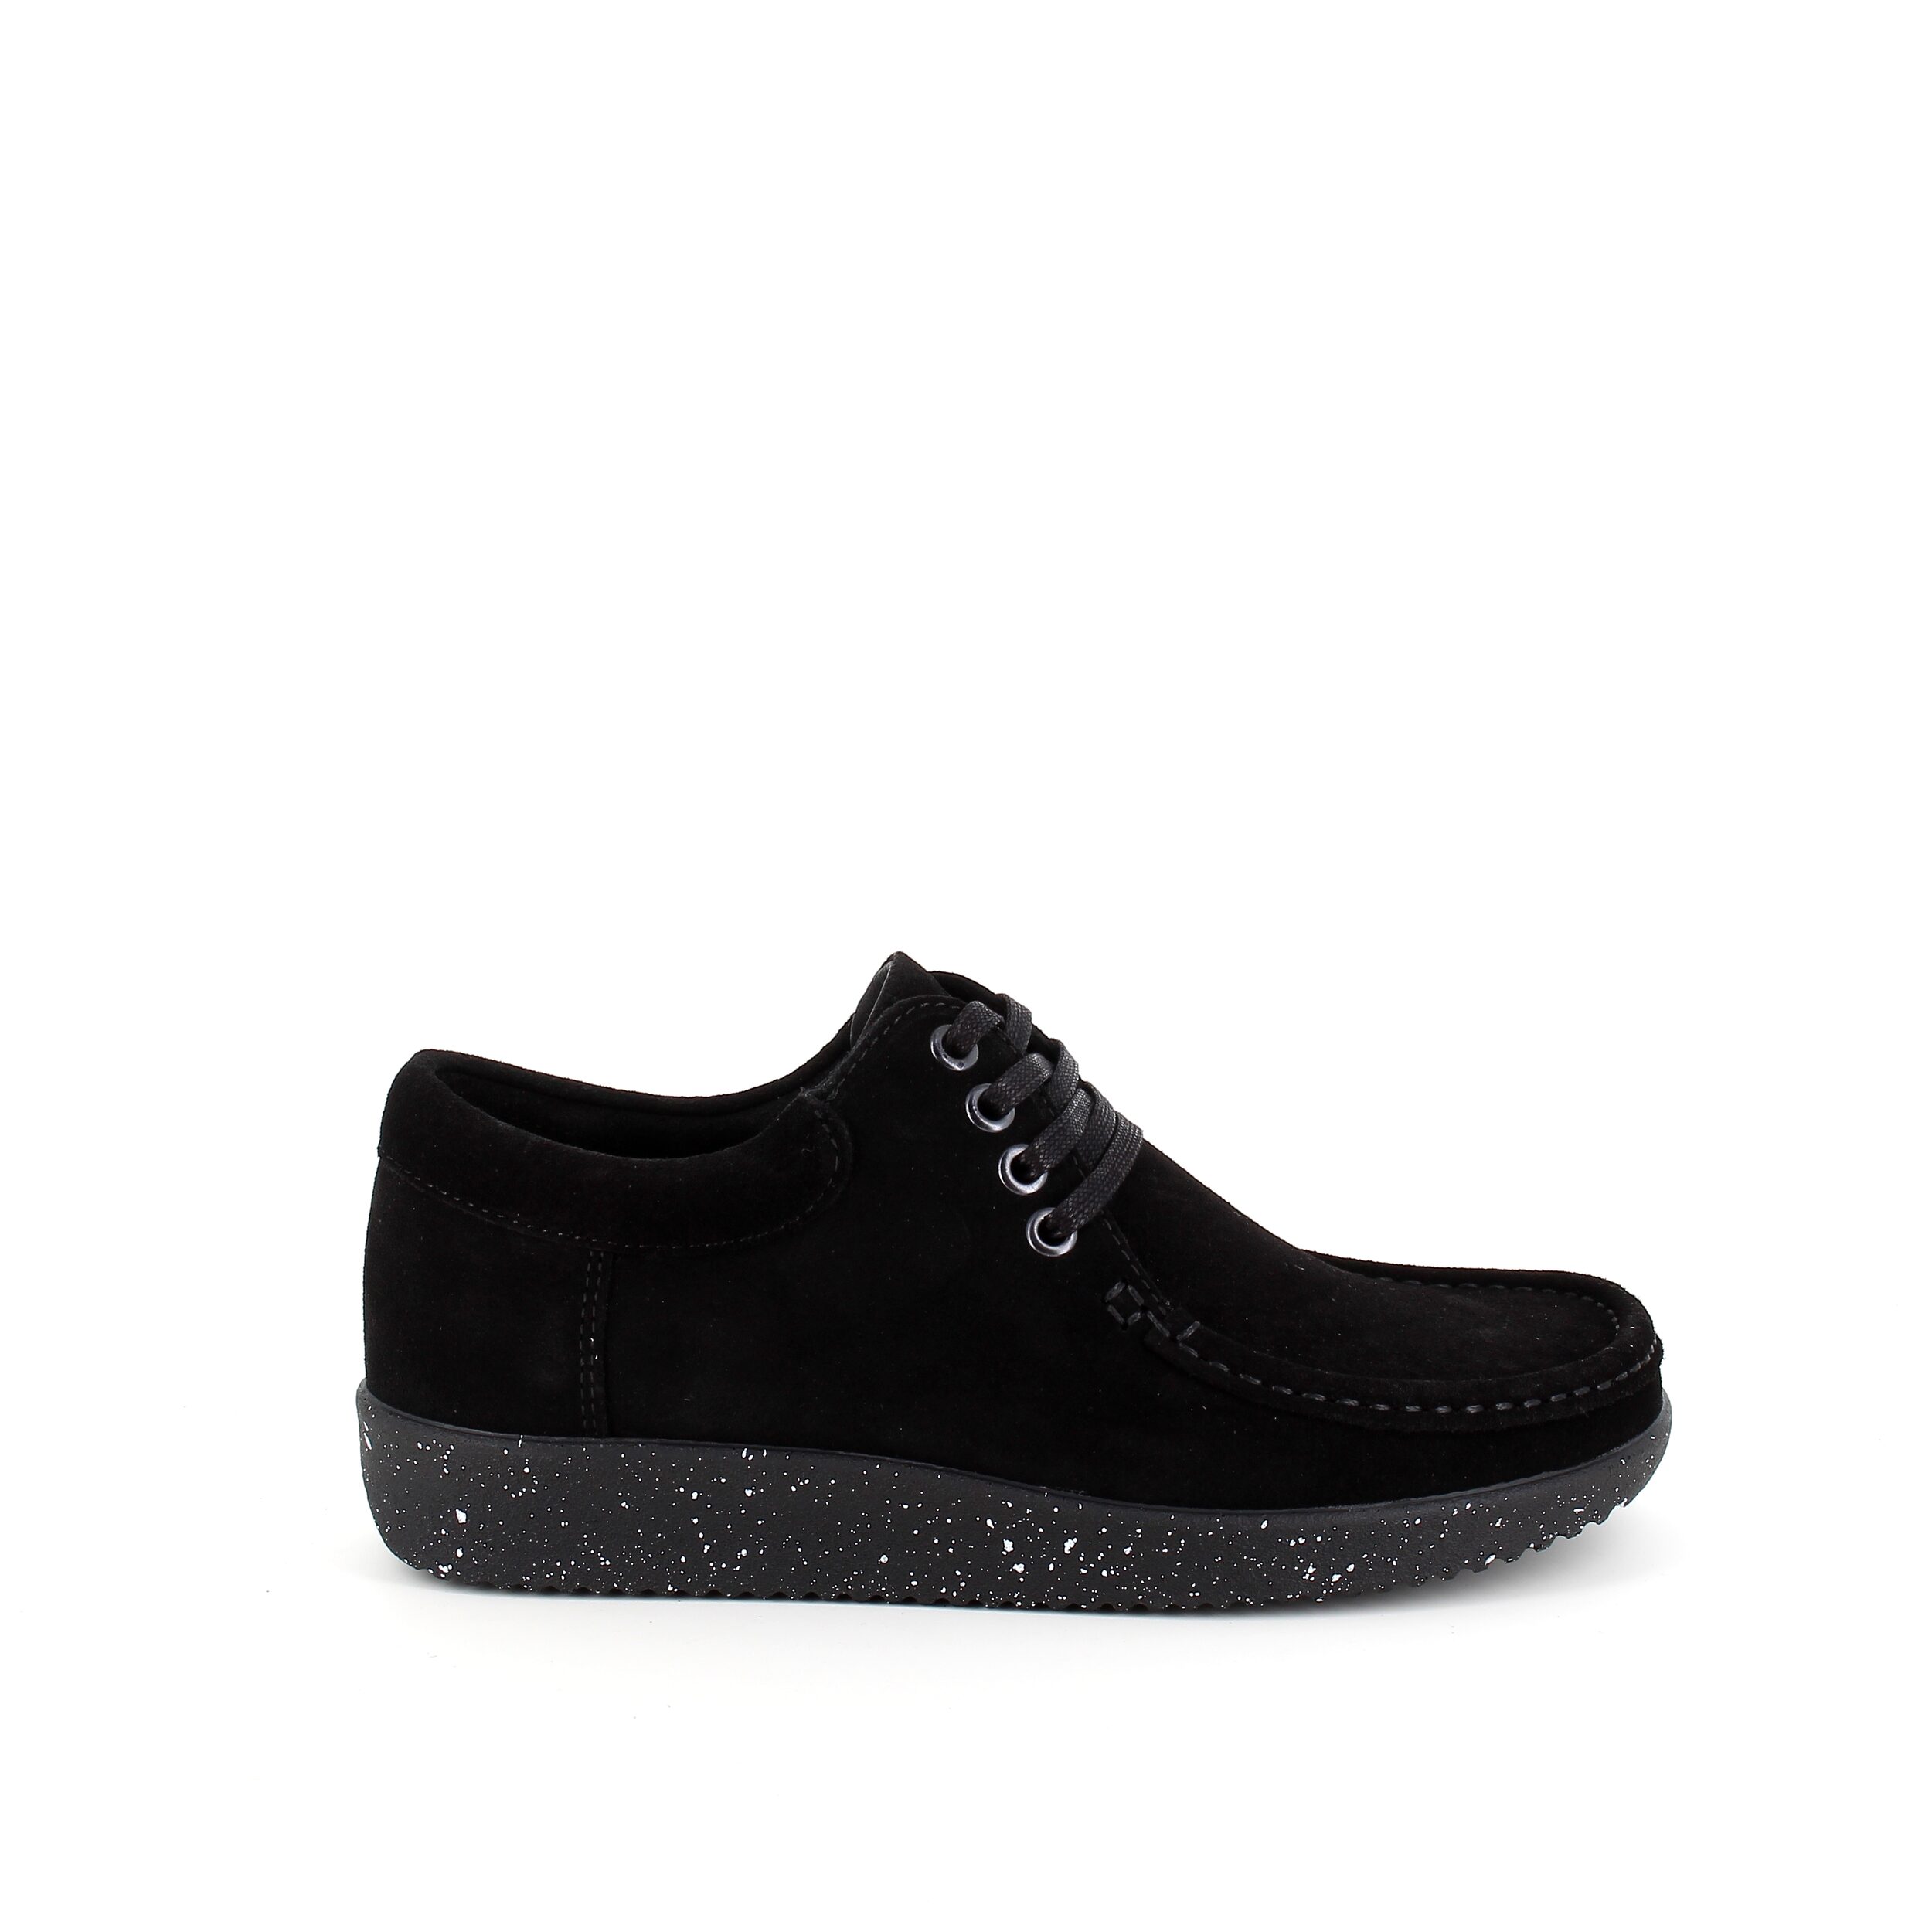 Se Nature sko i sort ruskind med hvide nister i sålen - 42 hos Sygeplejebutikken.dk